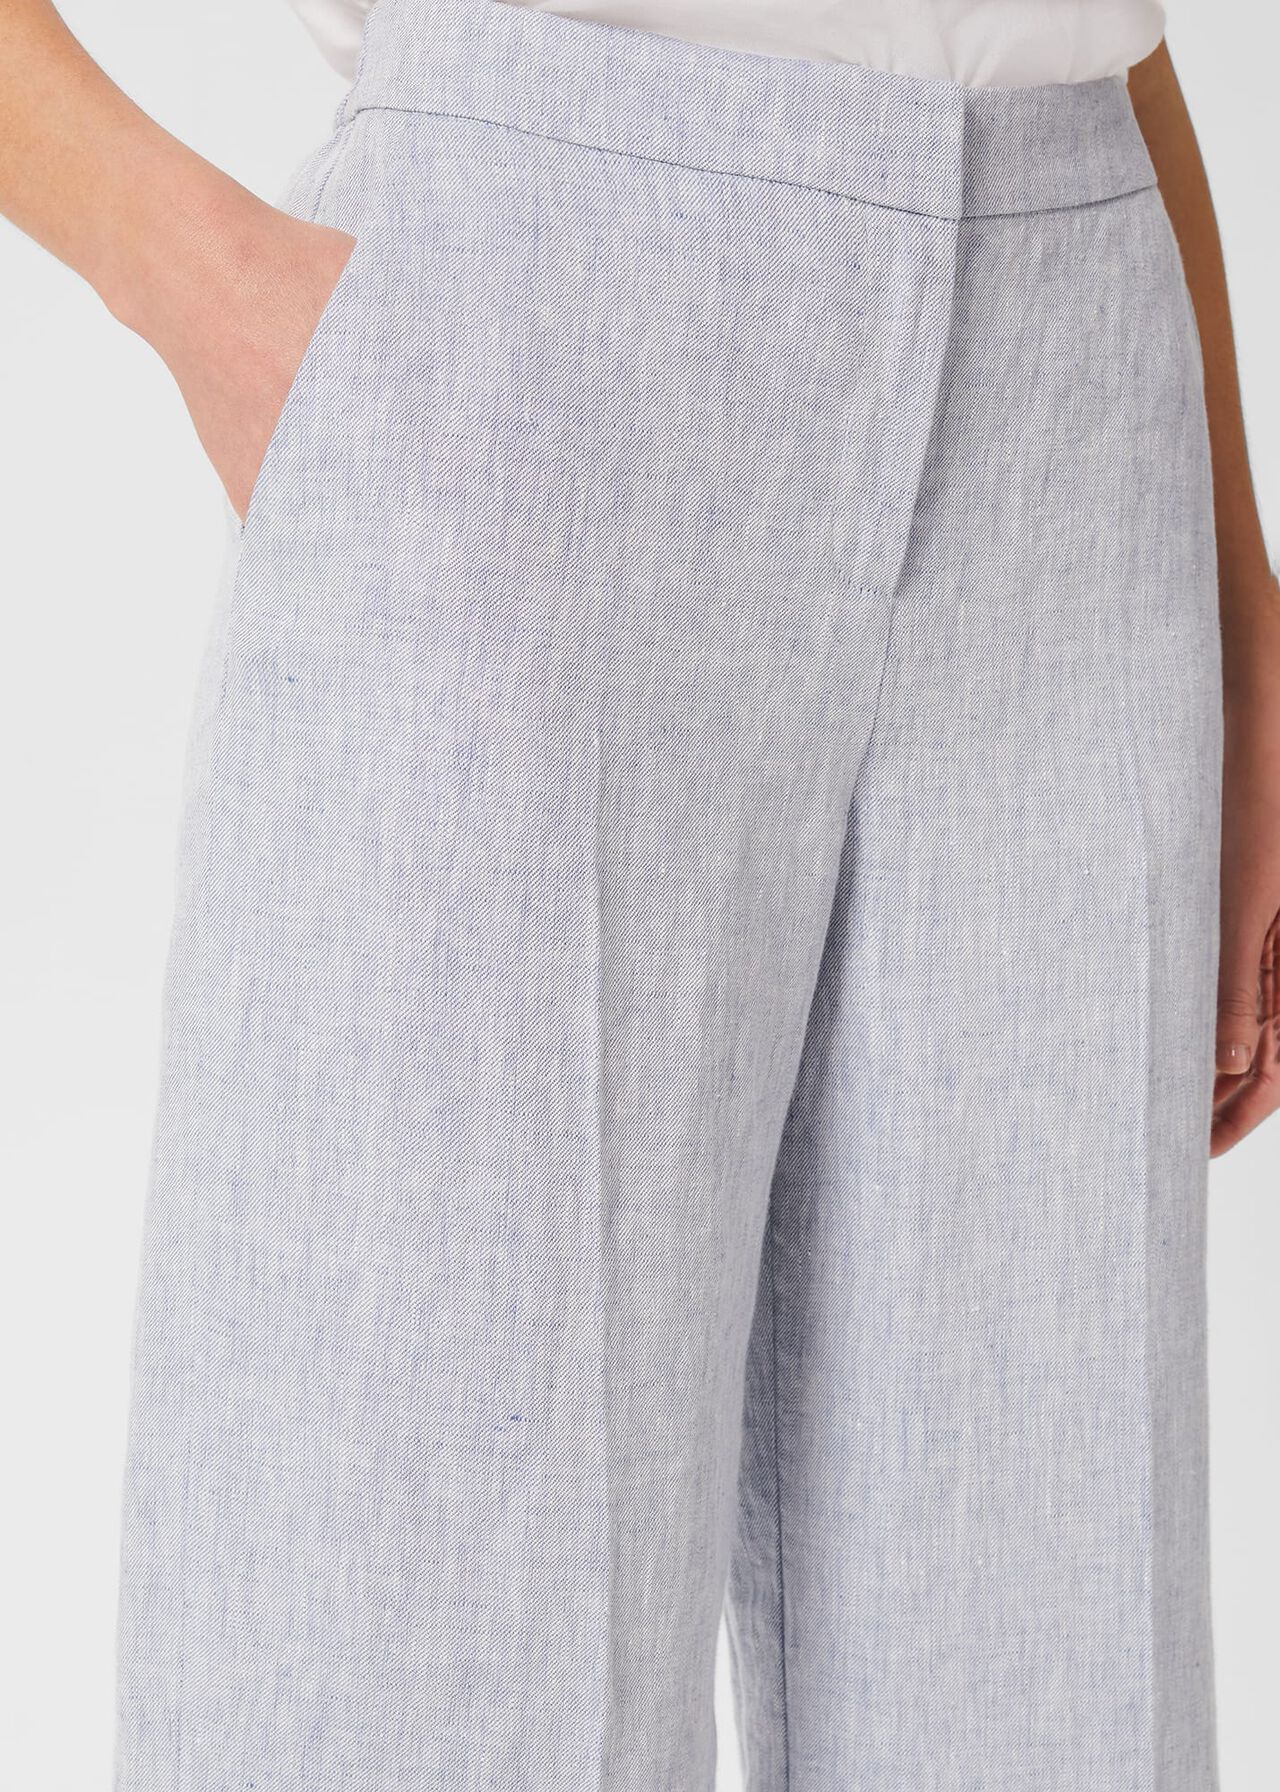 Maeve Linen Trousers, Pale Blue, hi-res